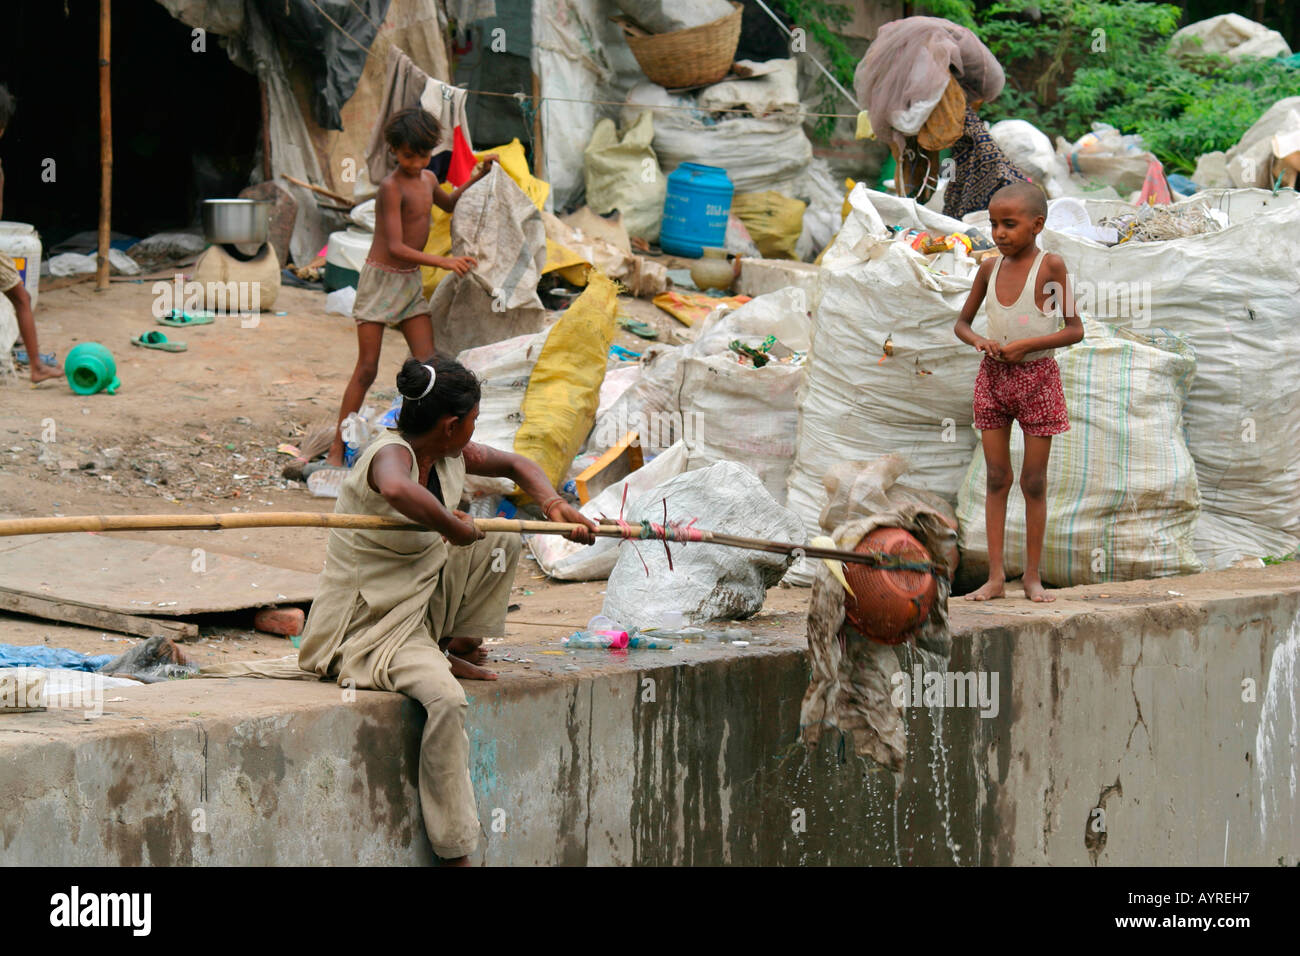 Mauvais état d'enfants qui vivent parmi les déchets dans un vaste camp, Agra, Inde Banque D'Images